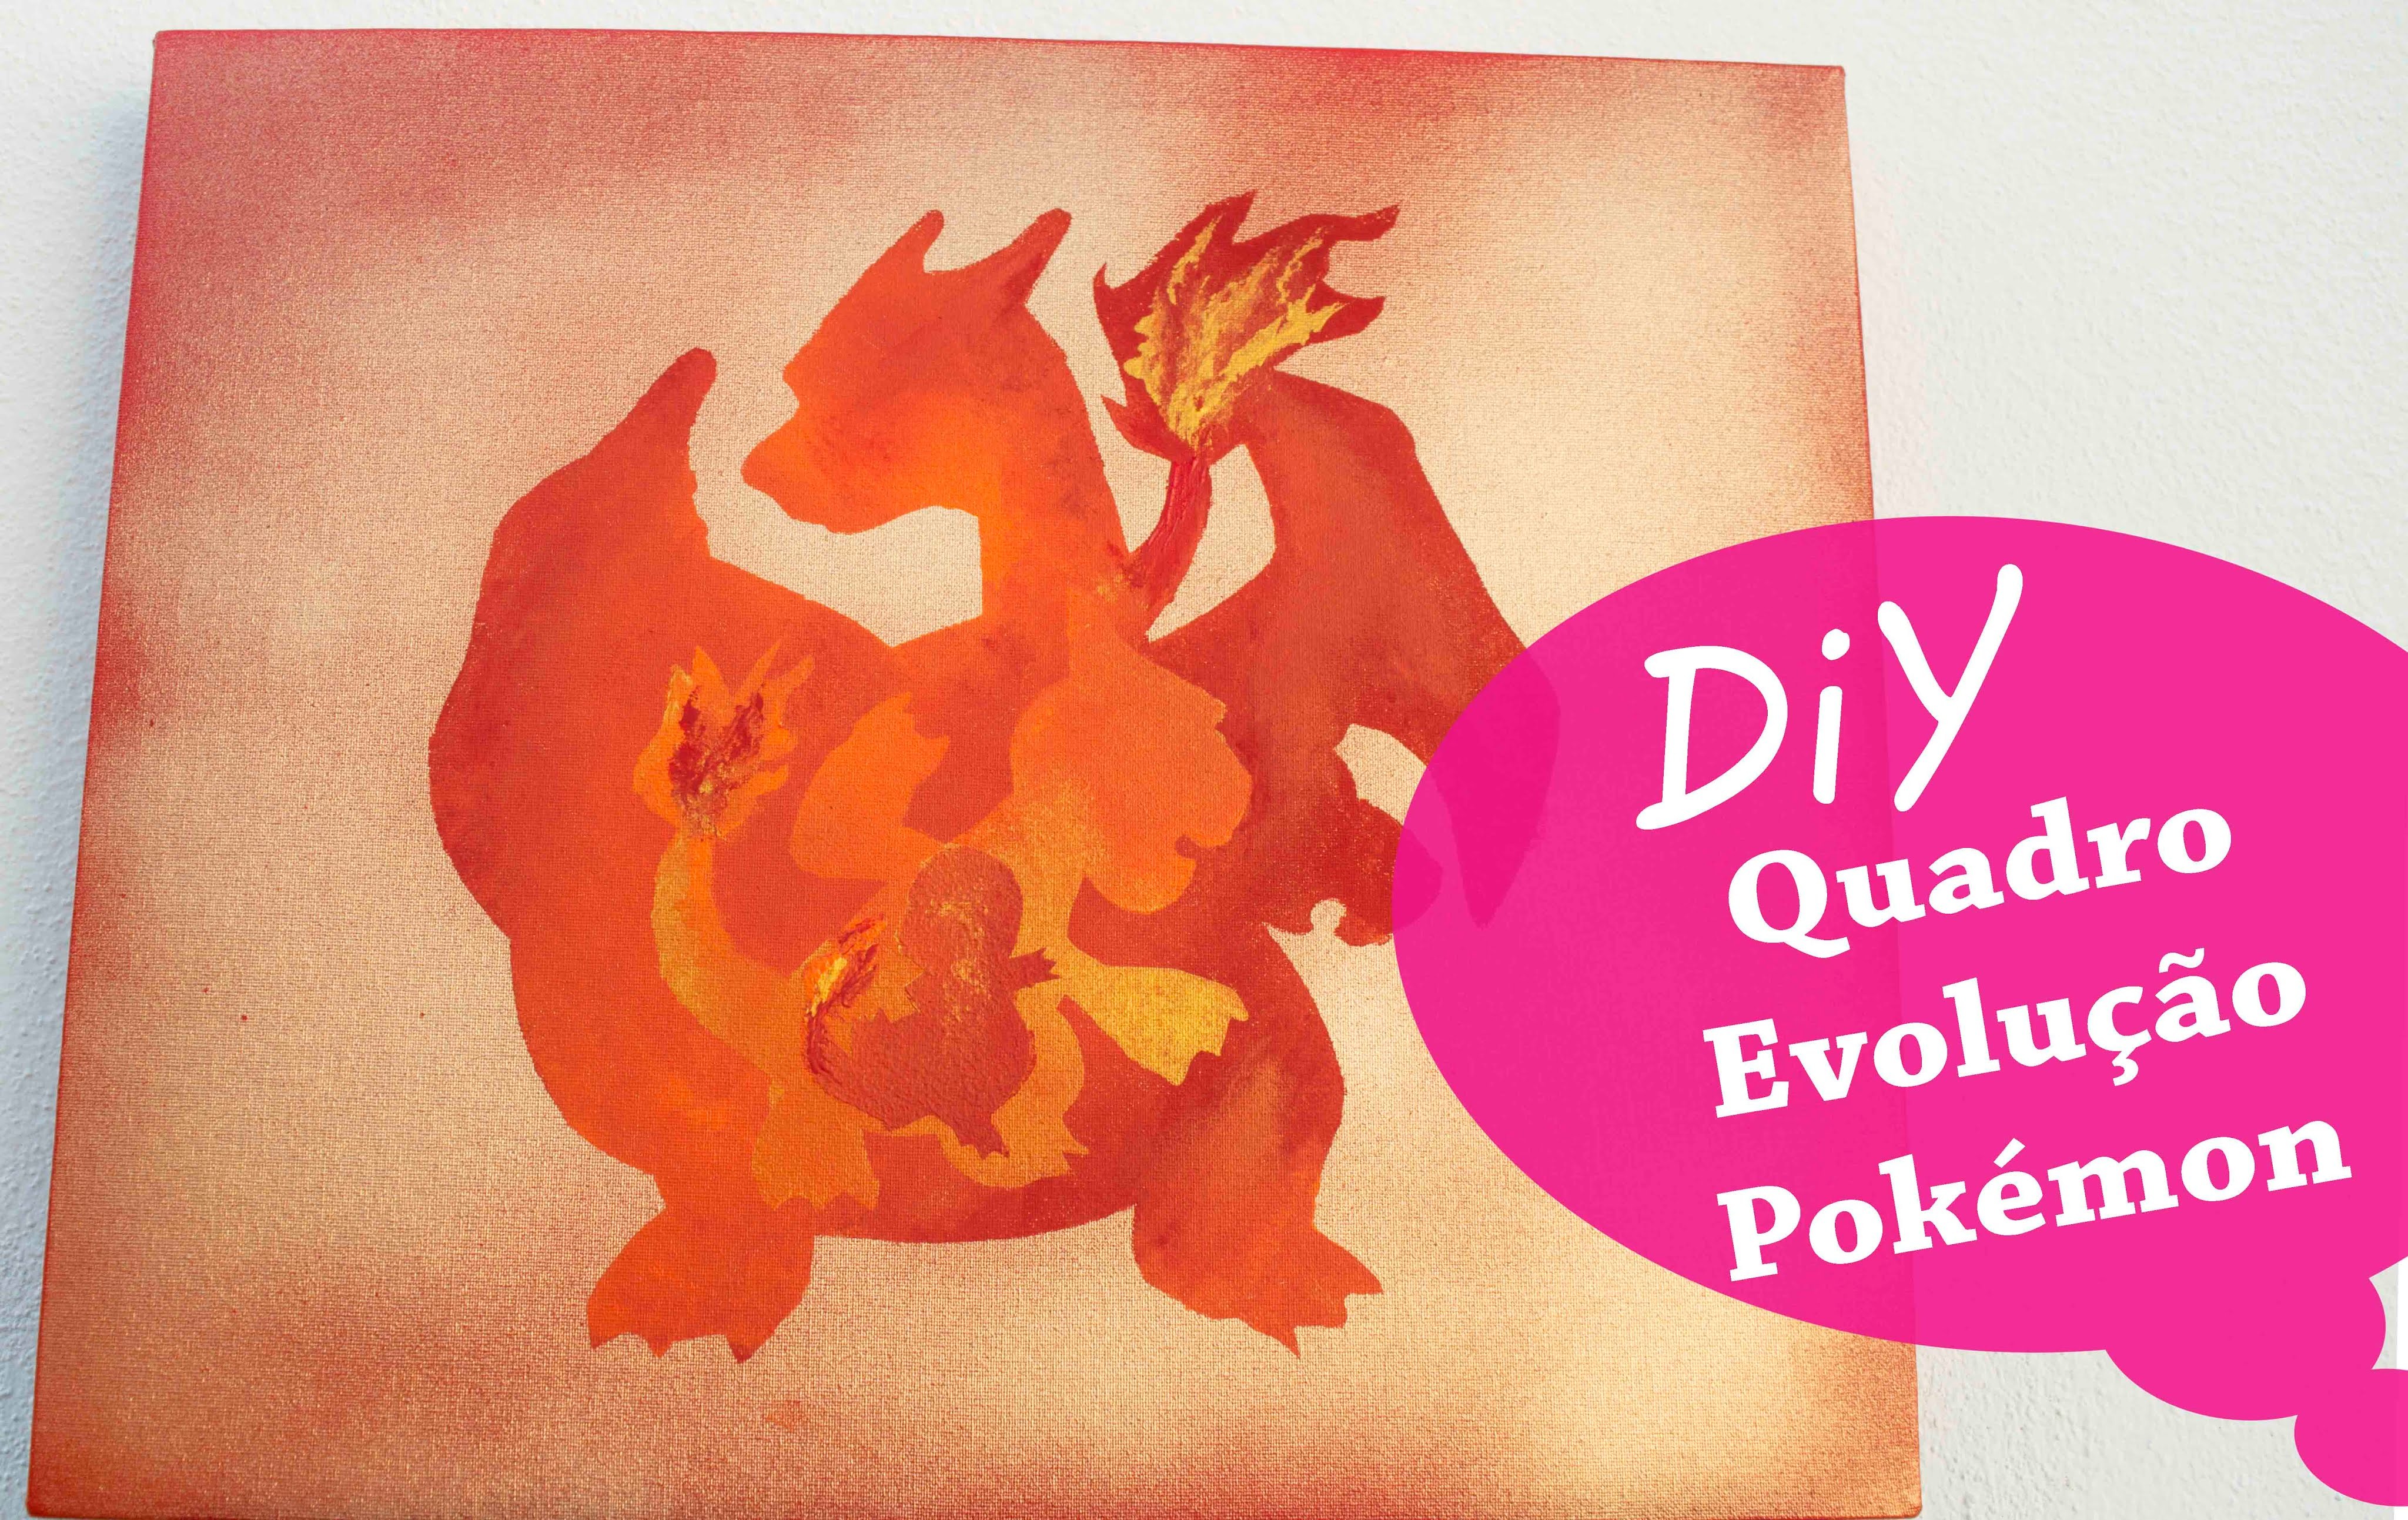 DIY - Quadro Evolução Pokémon - Charmander. Charmeleon. Charizard ( Time Valor)